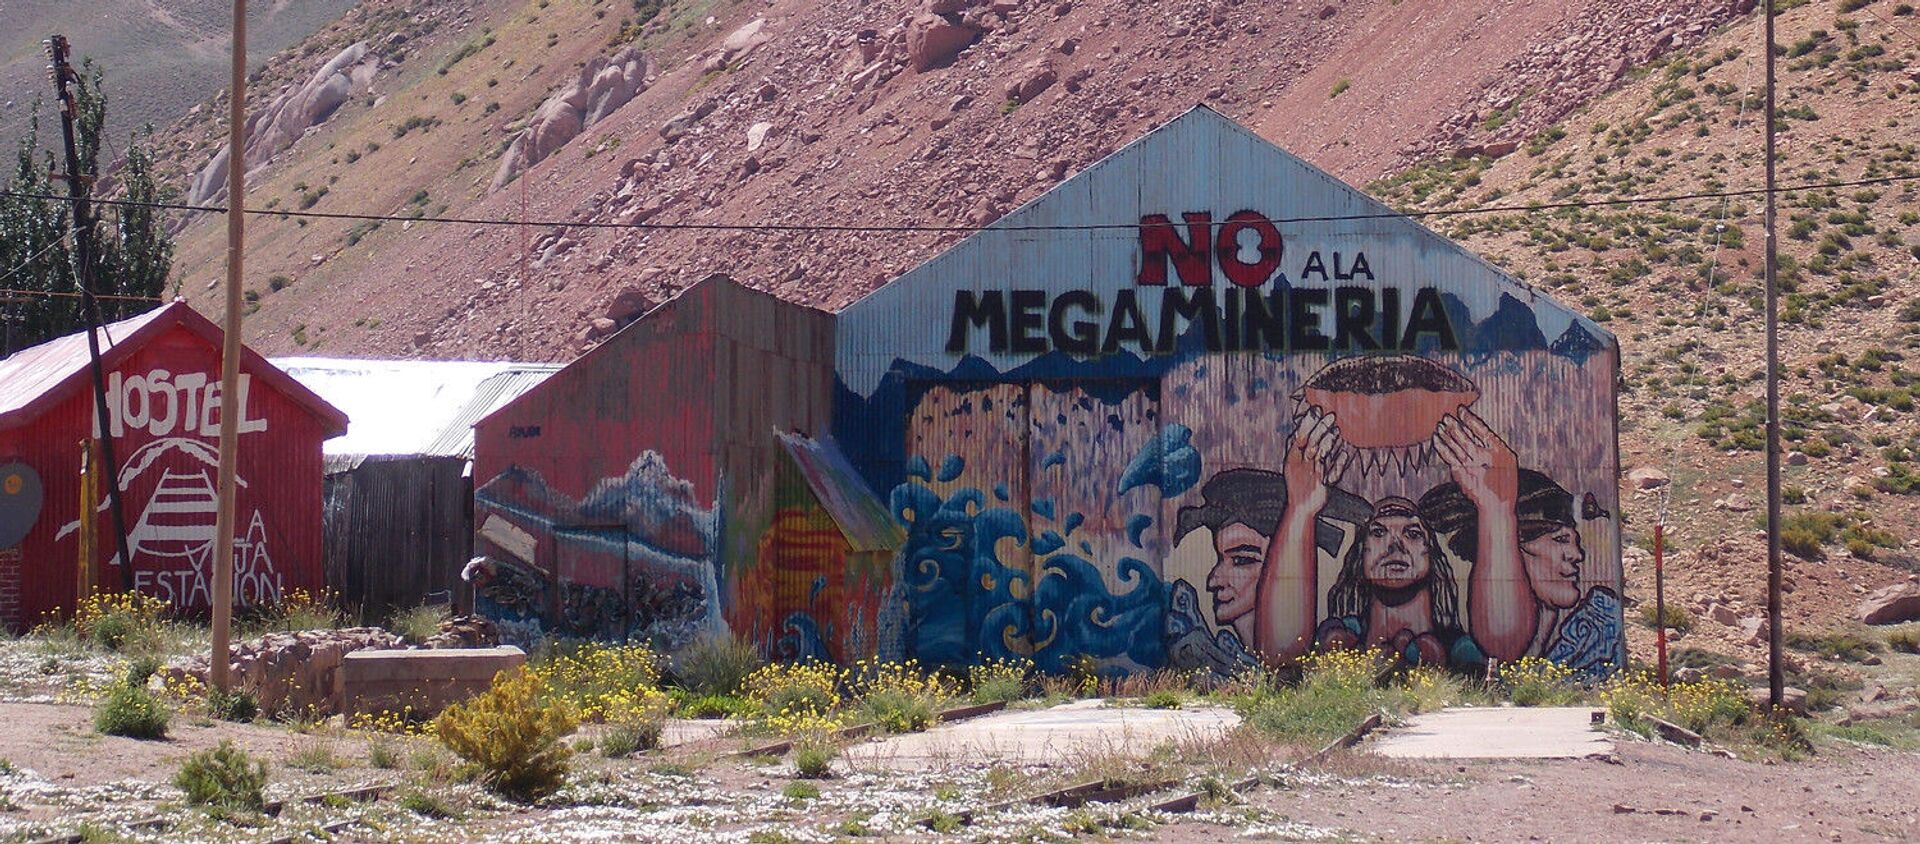 Mural contra megaminería en ruta de Mendoza a Chile  - Sputnik Mundo, 1920, 26.12.2019